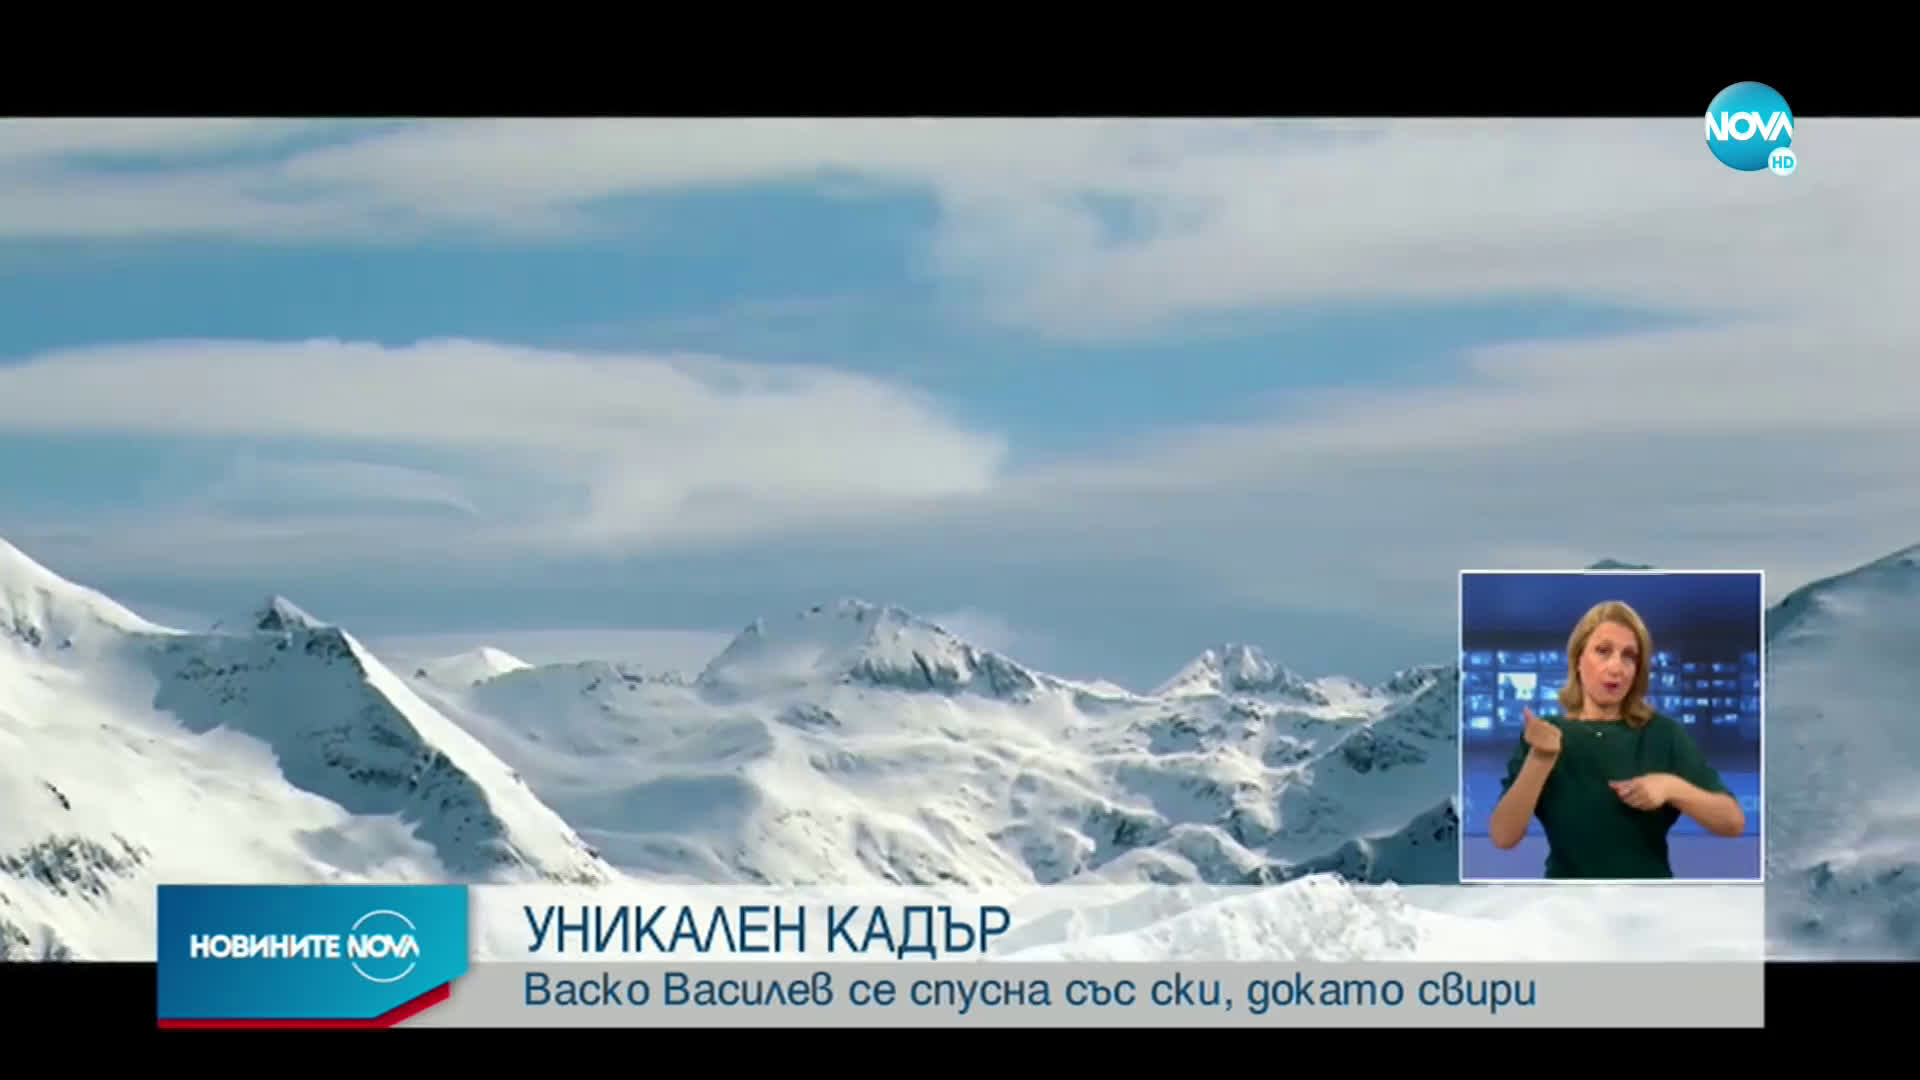 УНИКАЛЕН КАДЪР: Васко Василев се спусна със ски, докато свири